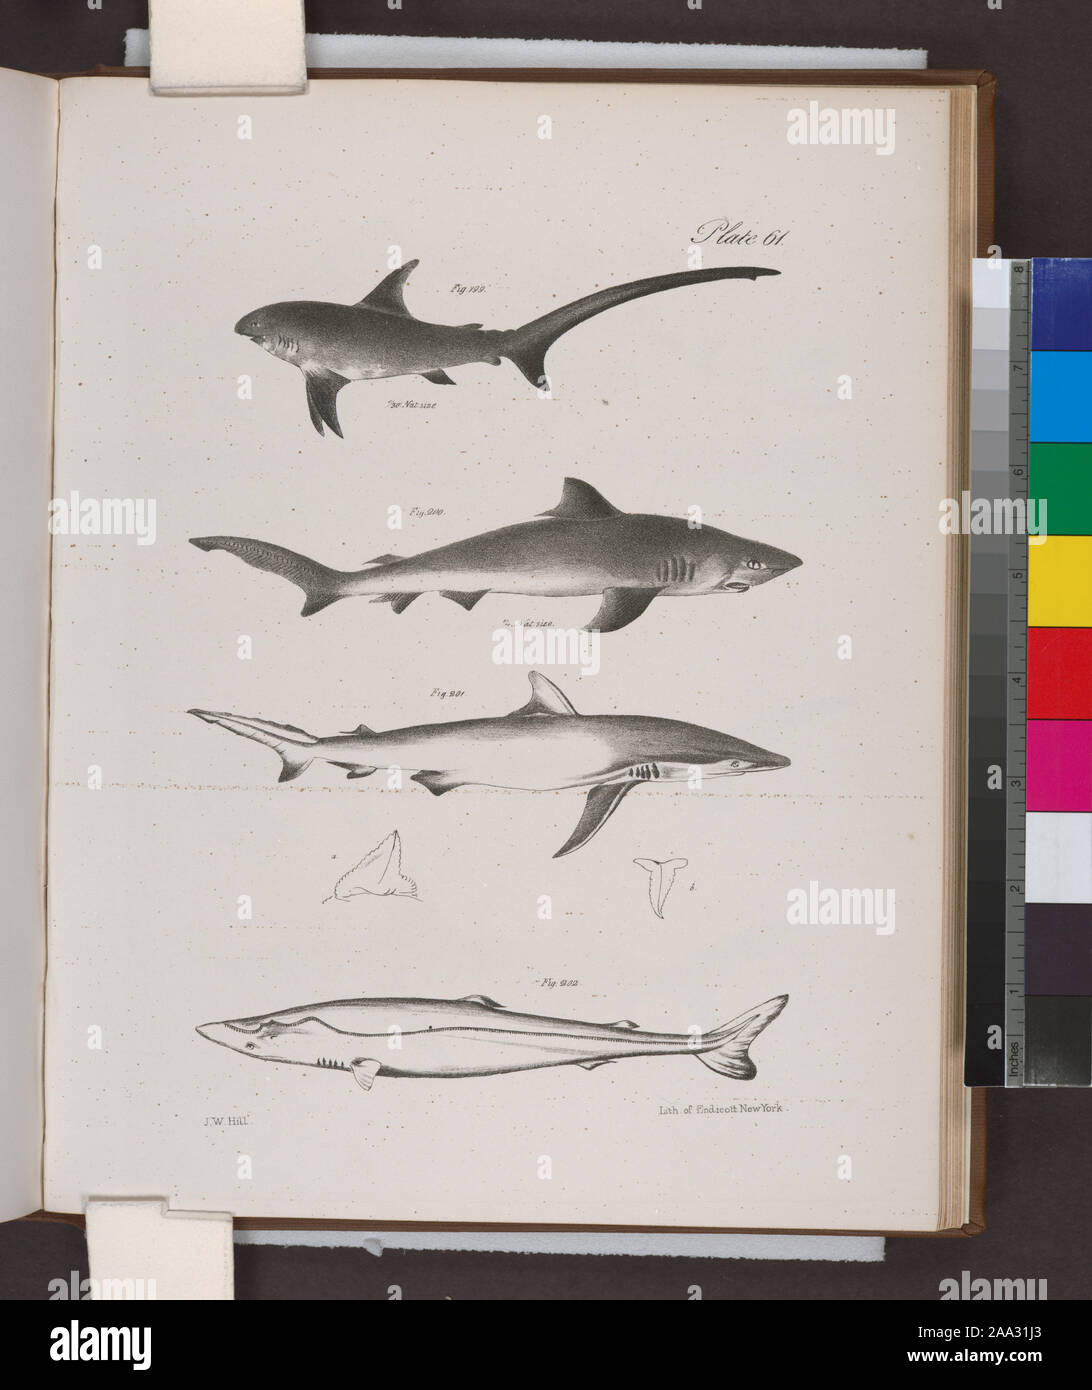 199. The Thresher Shark (Carcharias vulpes).  200.  The Small Blue Shark (C. ceruleus).  201. The Dusky Shark (C. obscurus). 202. The Nurse (Scymnus brevipinna).; 199. The Thresher Shark (Carcharias vulpes).  200.  The Small Blue Shark (C. ceruleus).  201. The Dusky Shark (C. obscurus). 202. The Nurse (Scymnus brevipinna). Stock Photo